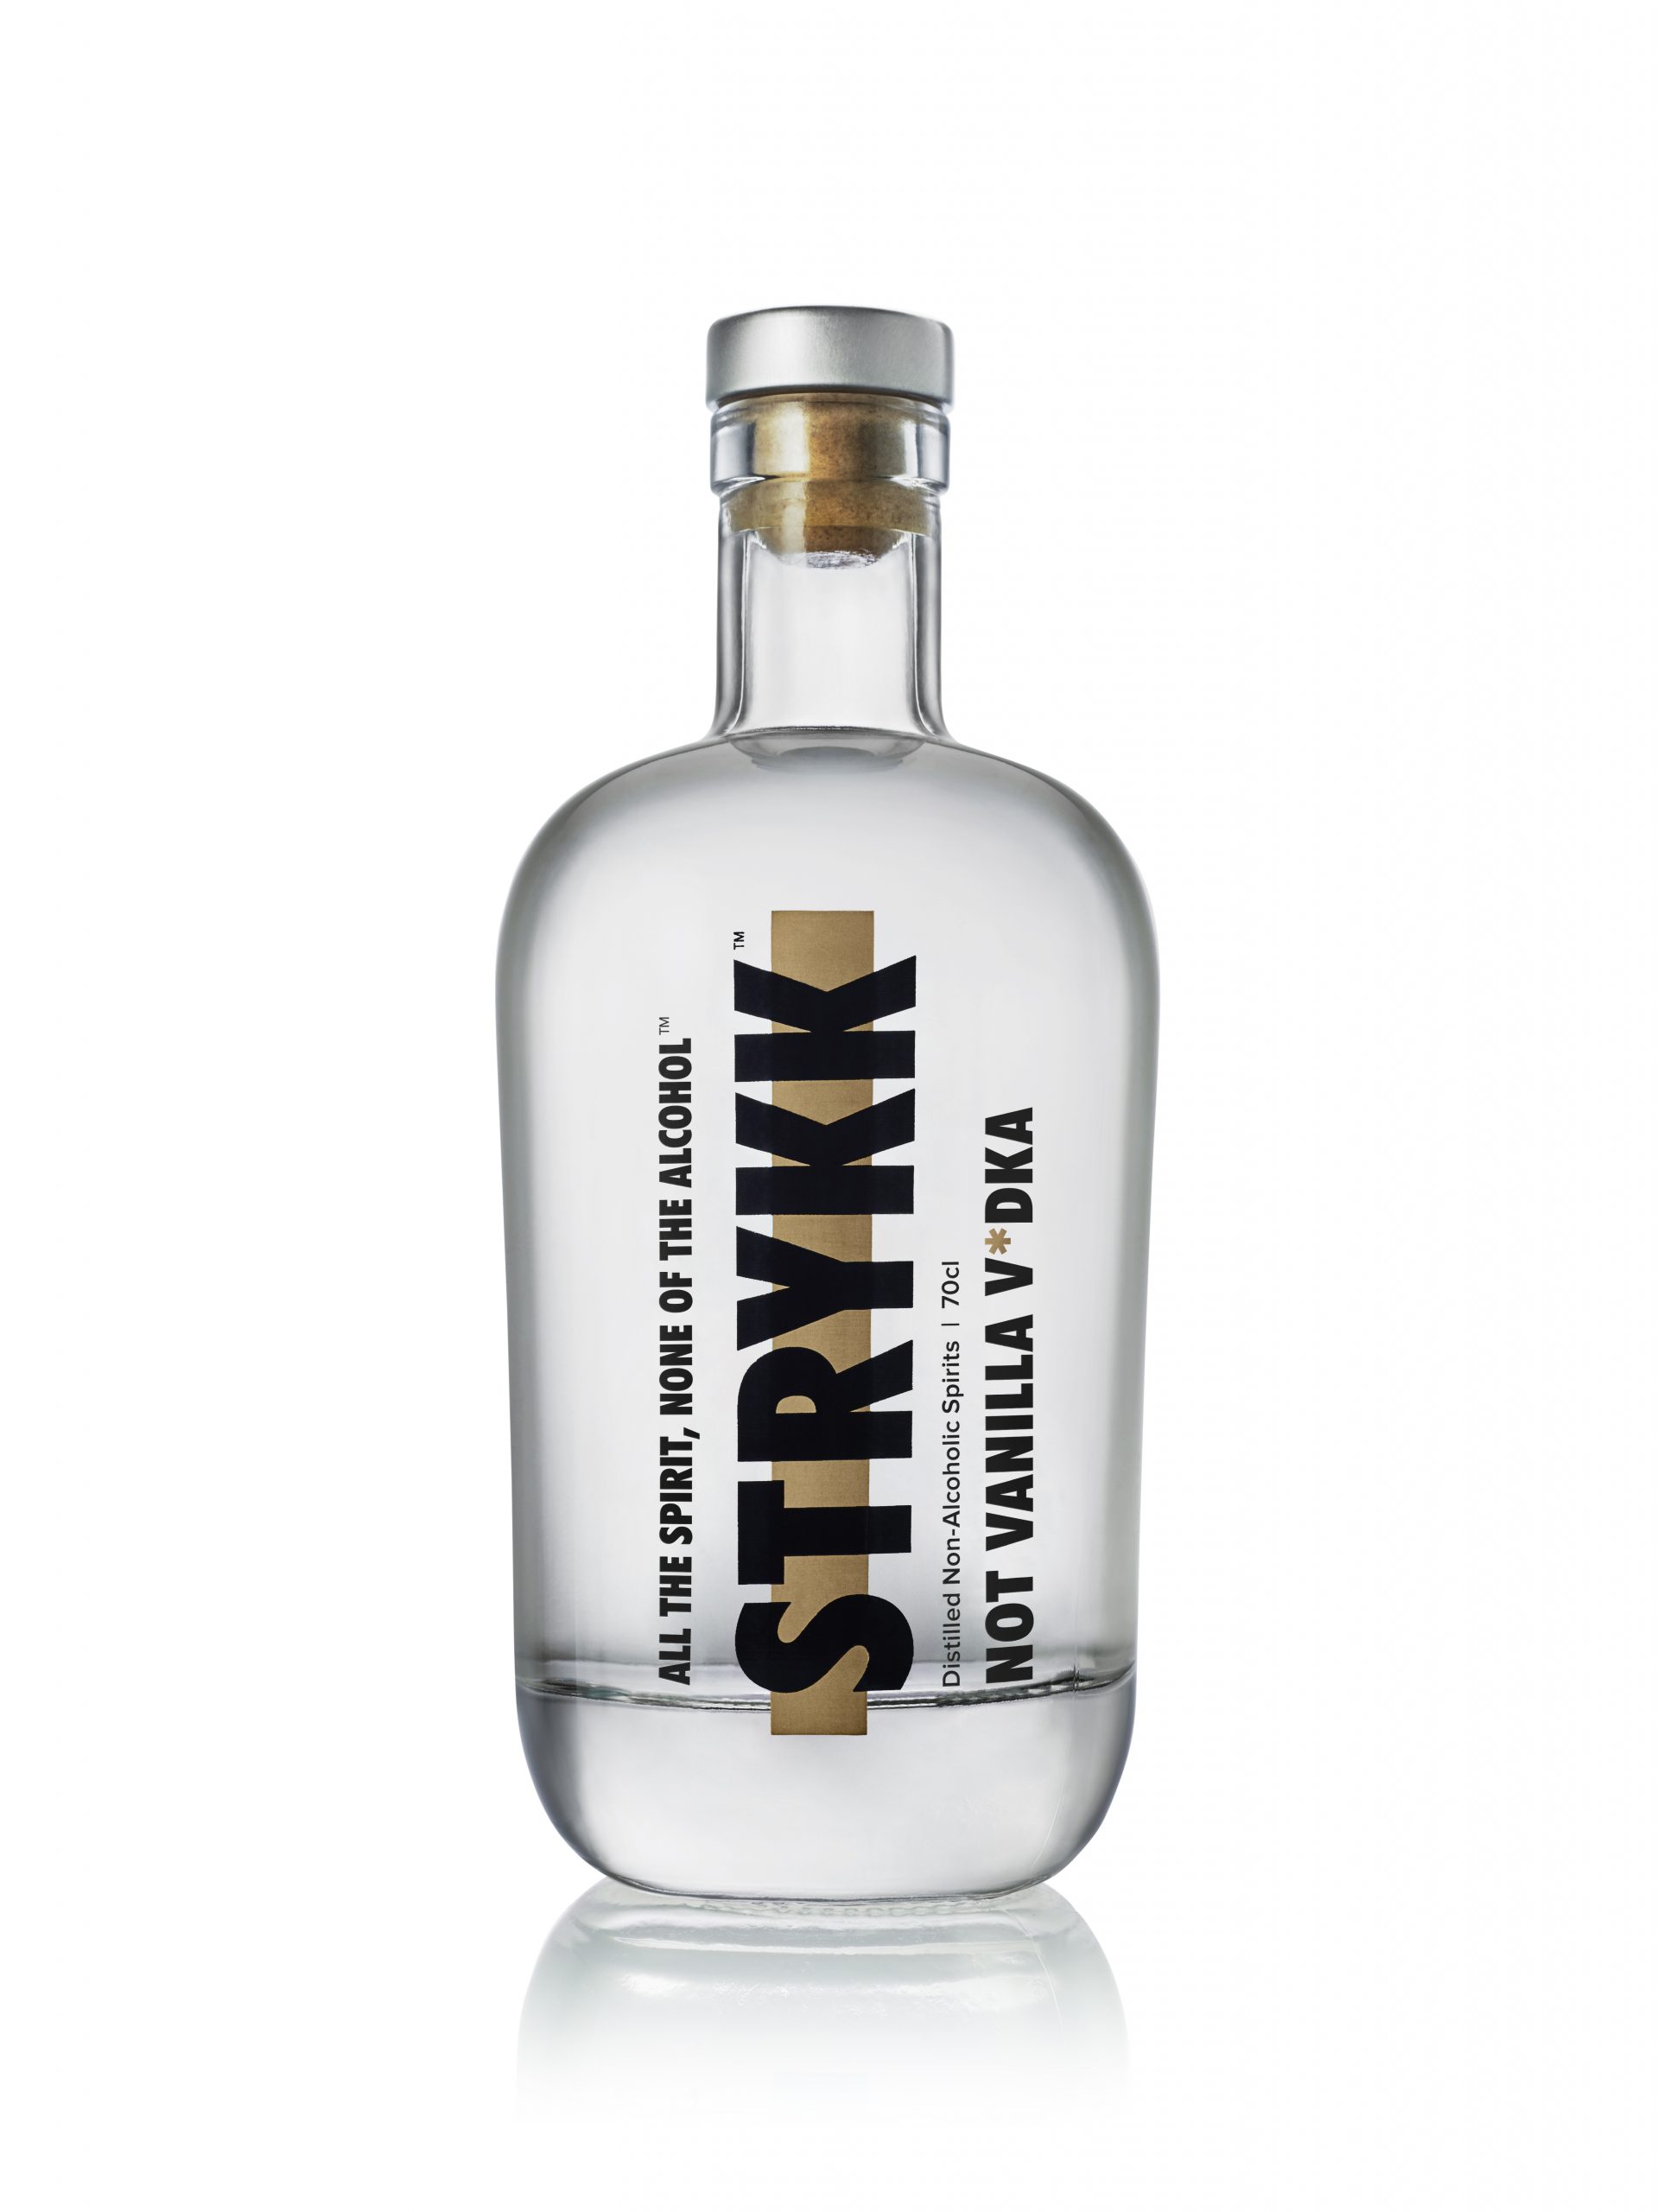 Strykk adds Not Vanilla V*dka to its non-alcoholic range